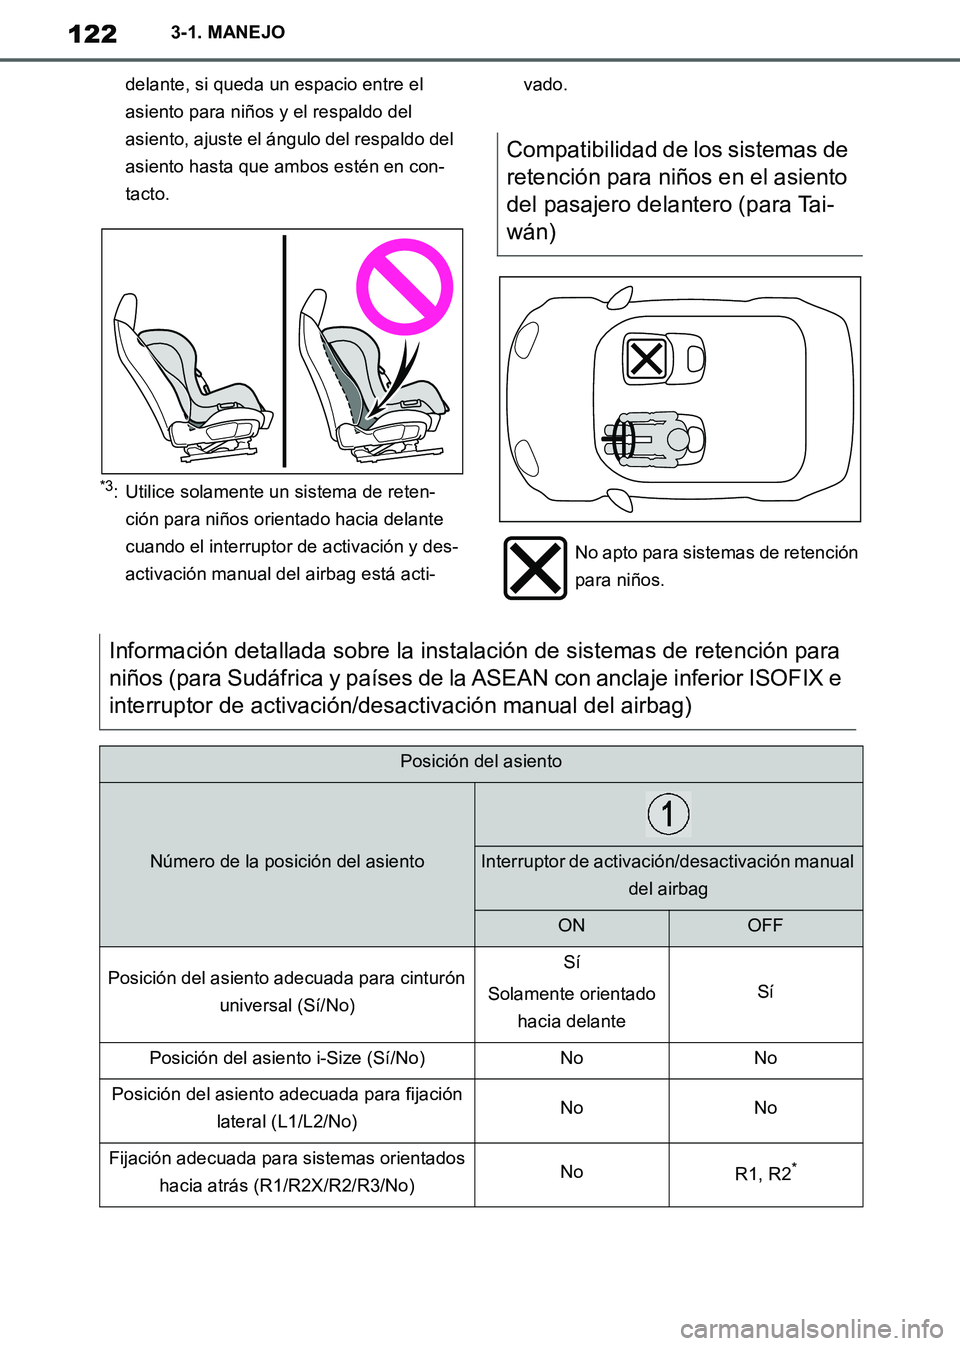 TOYOTA SUPRA 2019  Manuale de Empleo (in Spanish) 122
Supra Owners Manual_ES
3-1. MANEJO
delante, si queda un espacio entre el 
asiento para niños y el respaldo del 
asiento, ajuste el ángulo del respaldo del 
asiento hasta que ambos estén en con